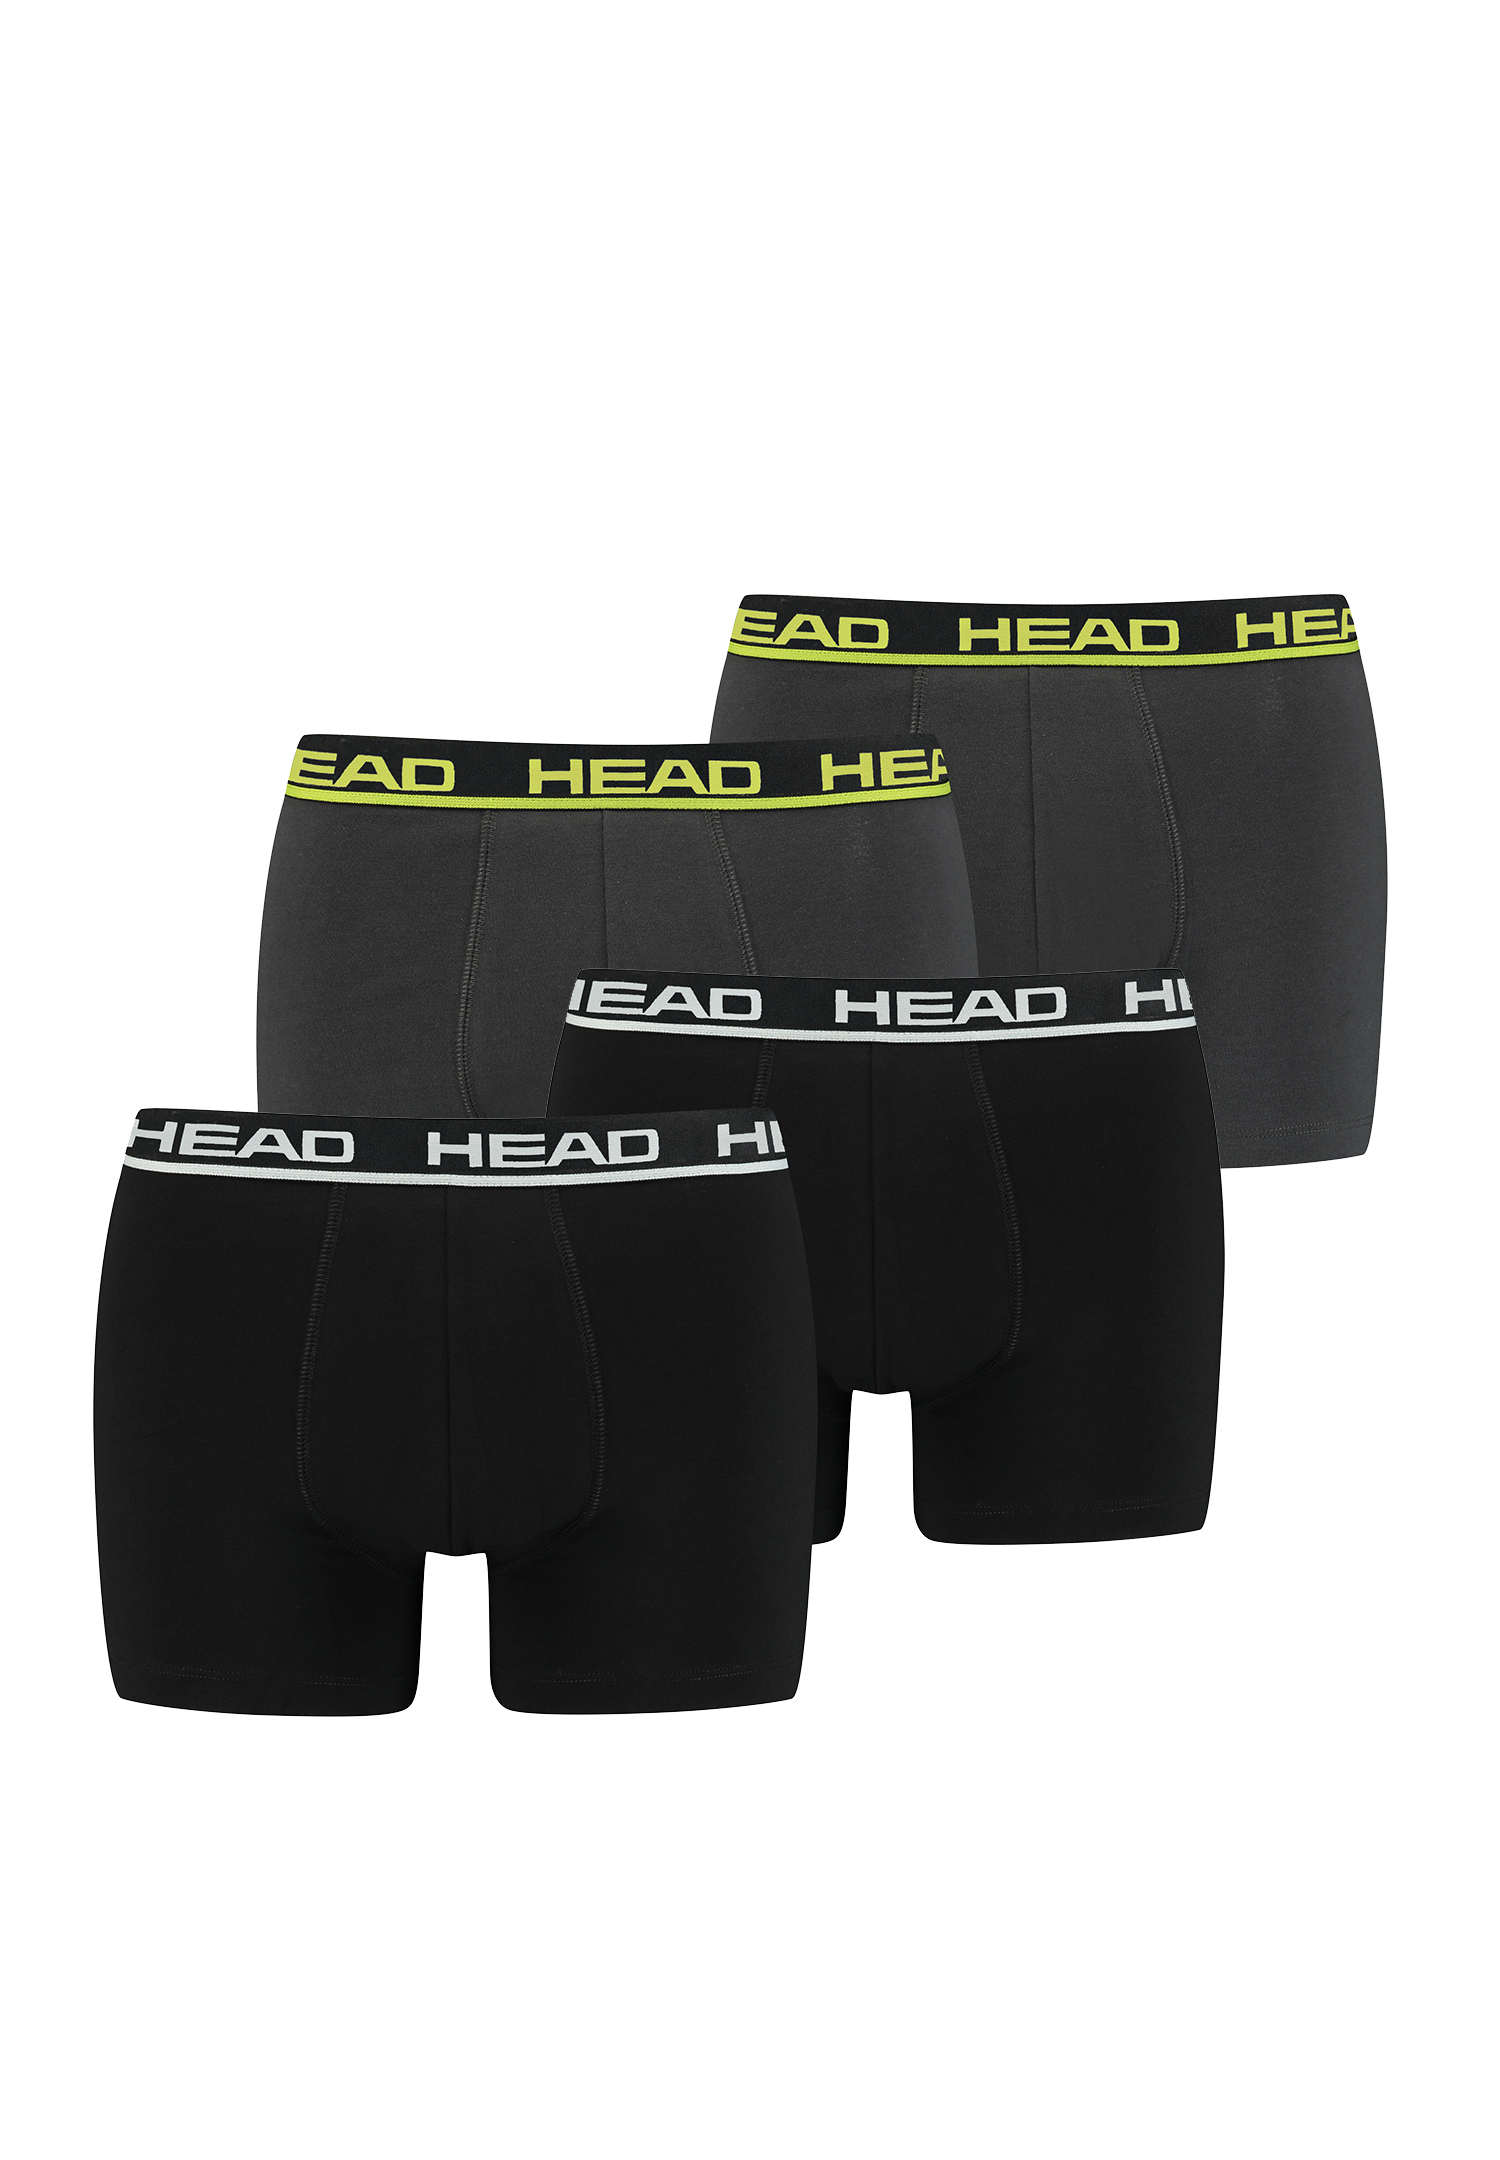 HEAD Herren Boxershorts 841001001 4er Pack, Farbe:Black/Phantom Lime, Bekleidungsgröße:S